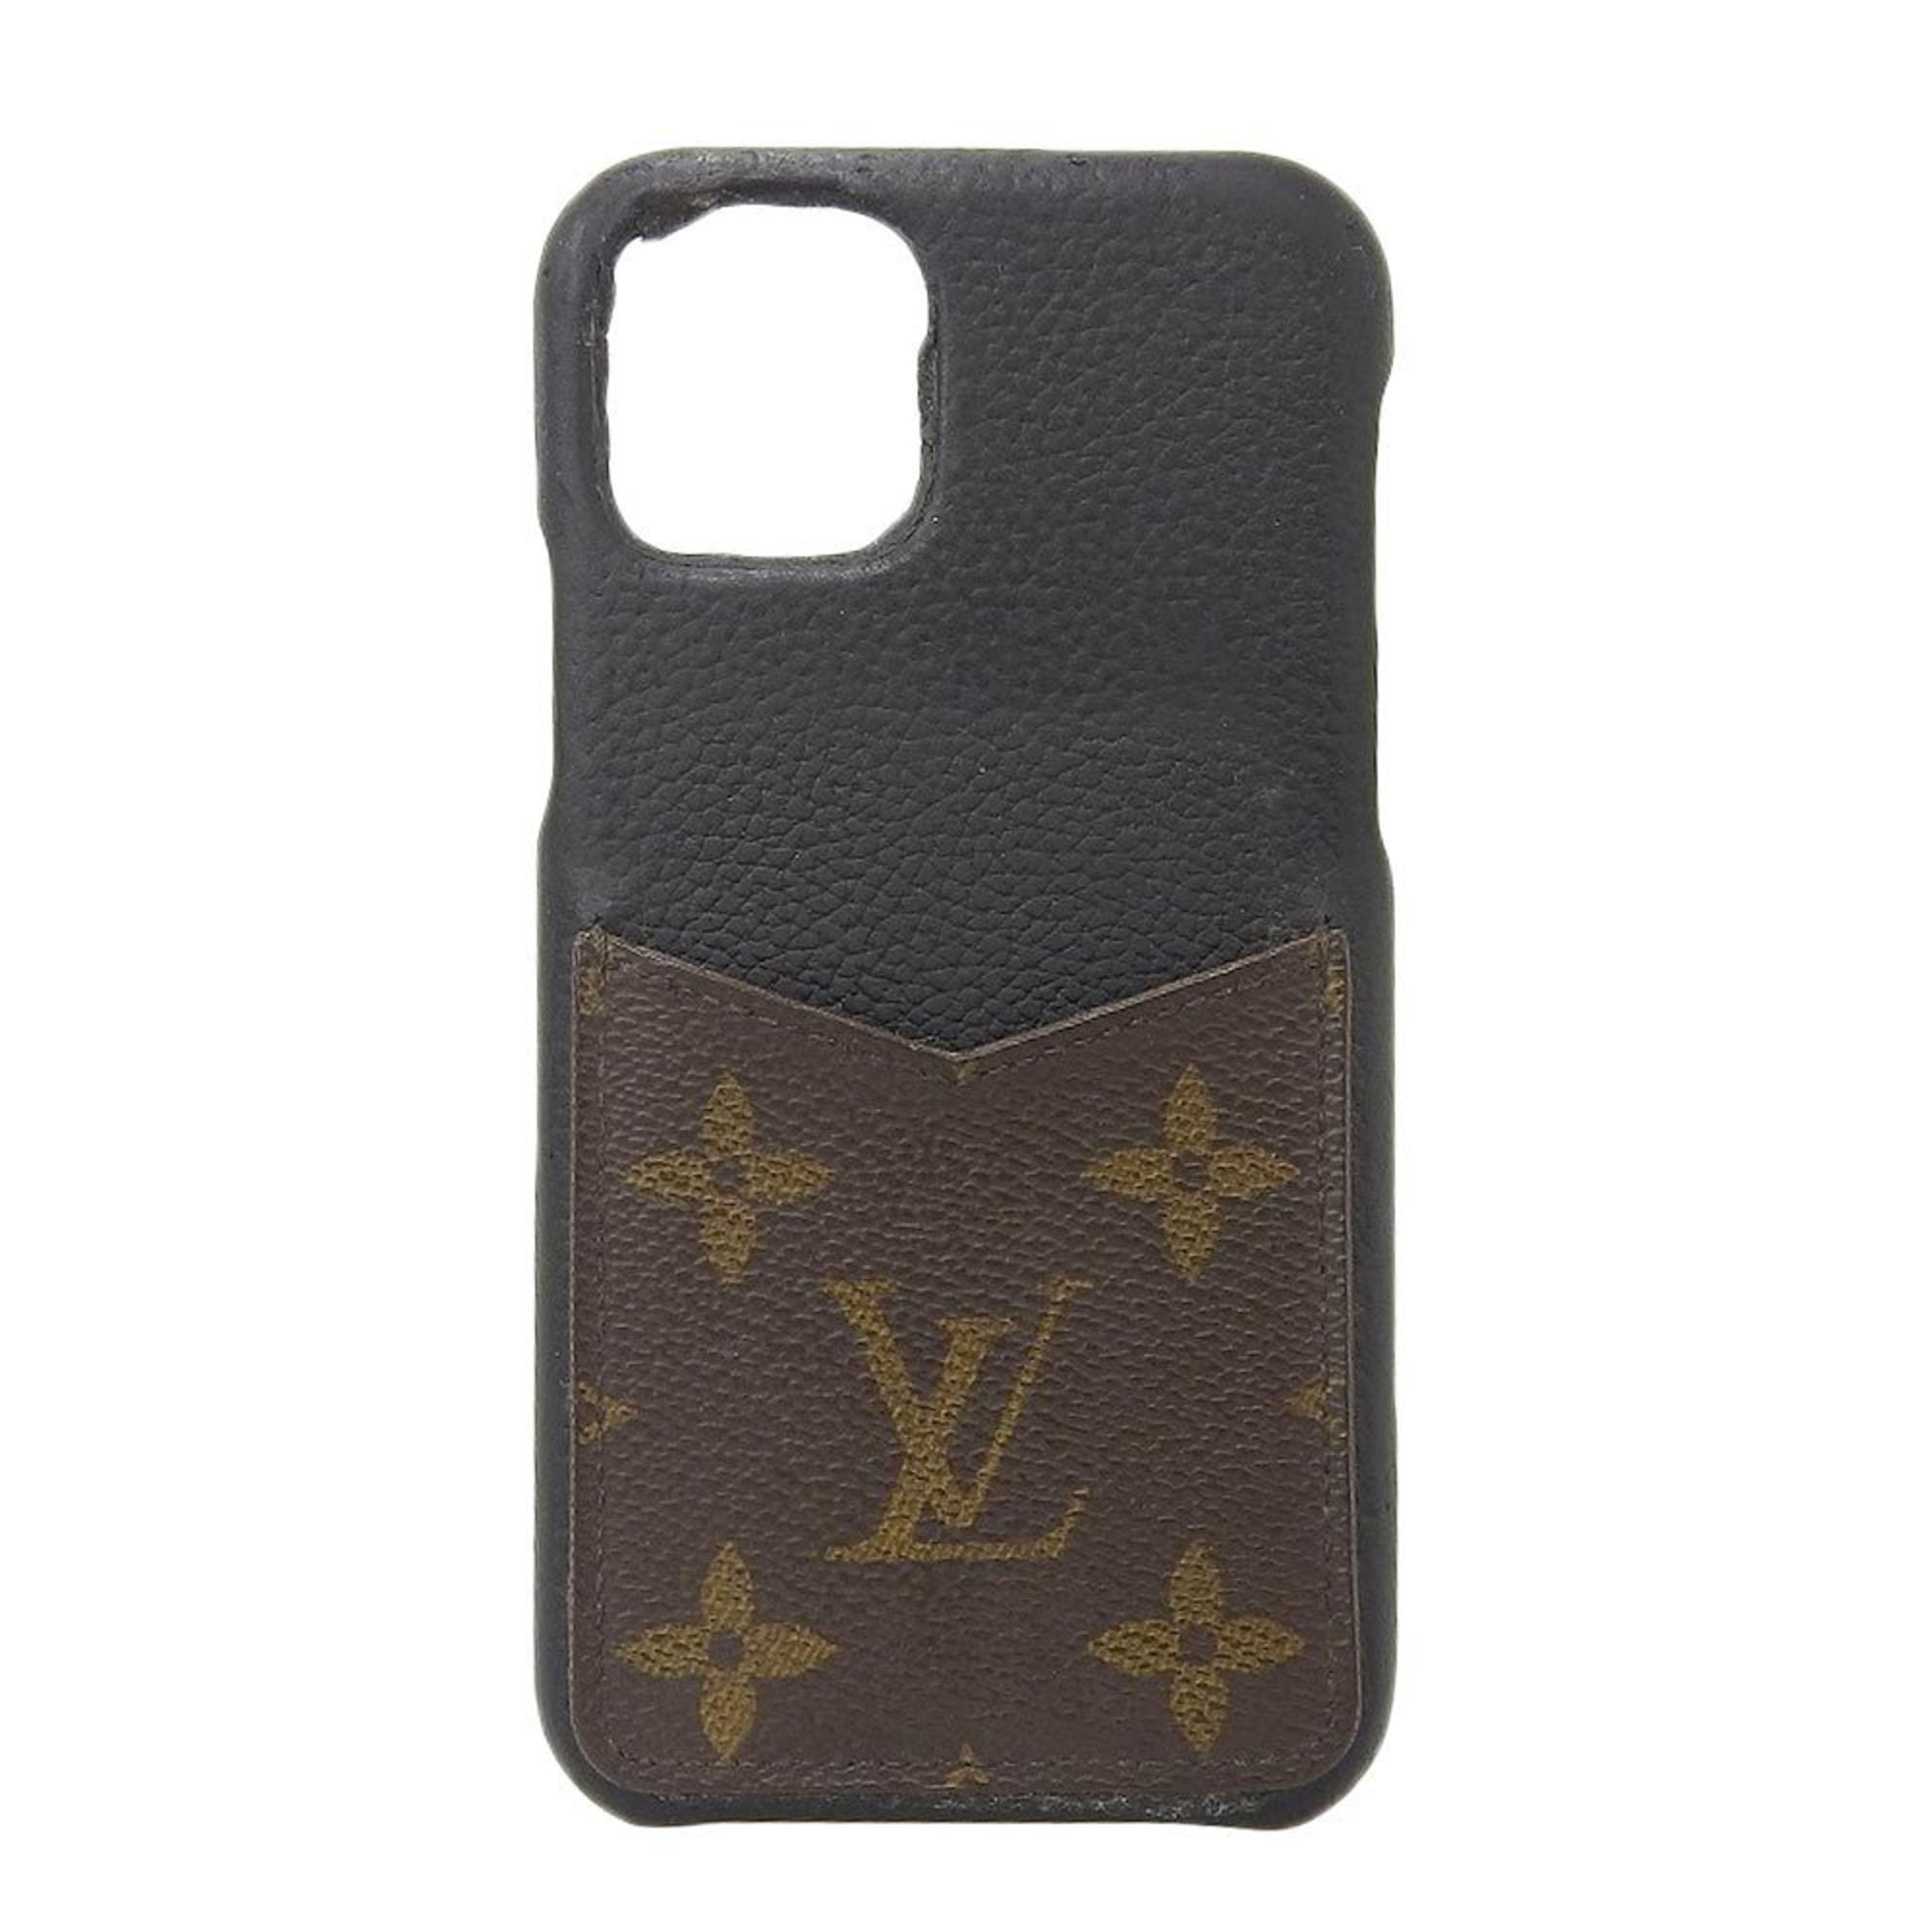 Louis Vuitton Taïgarama iPhone Xs Max Bumper w/ Tags